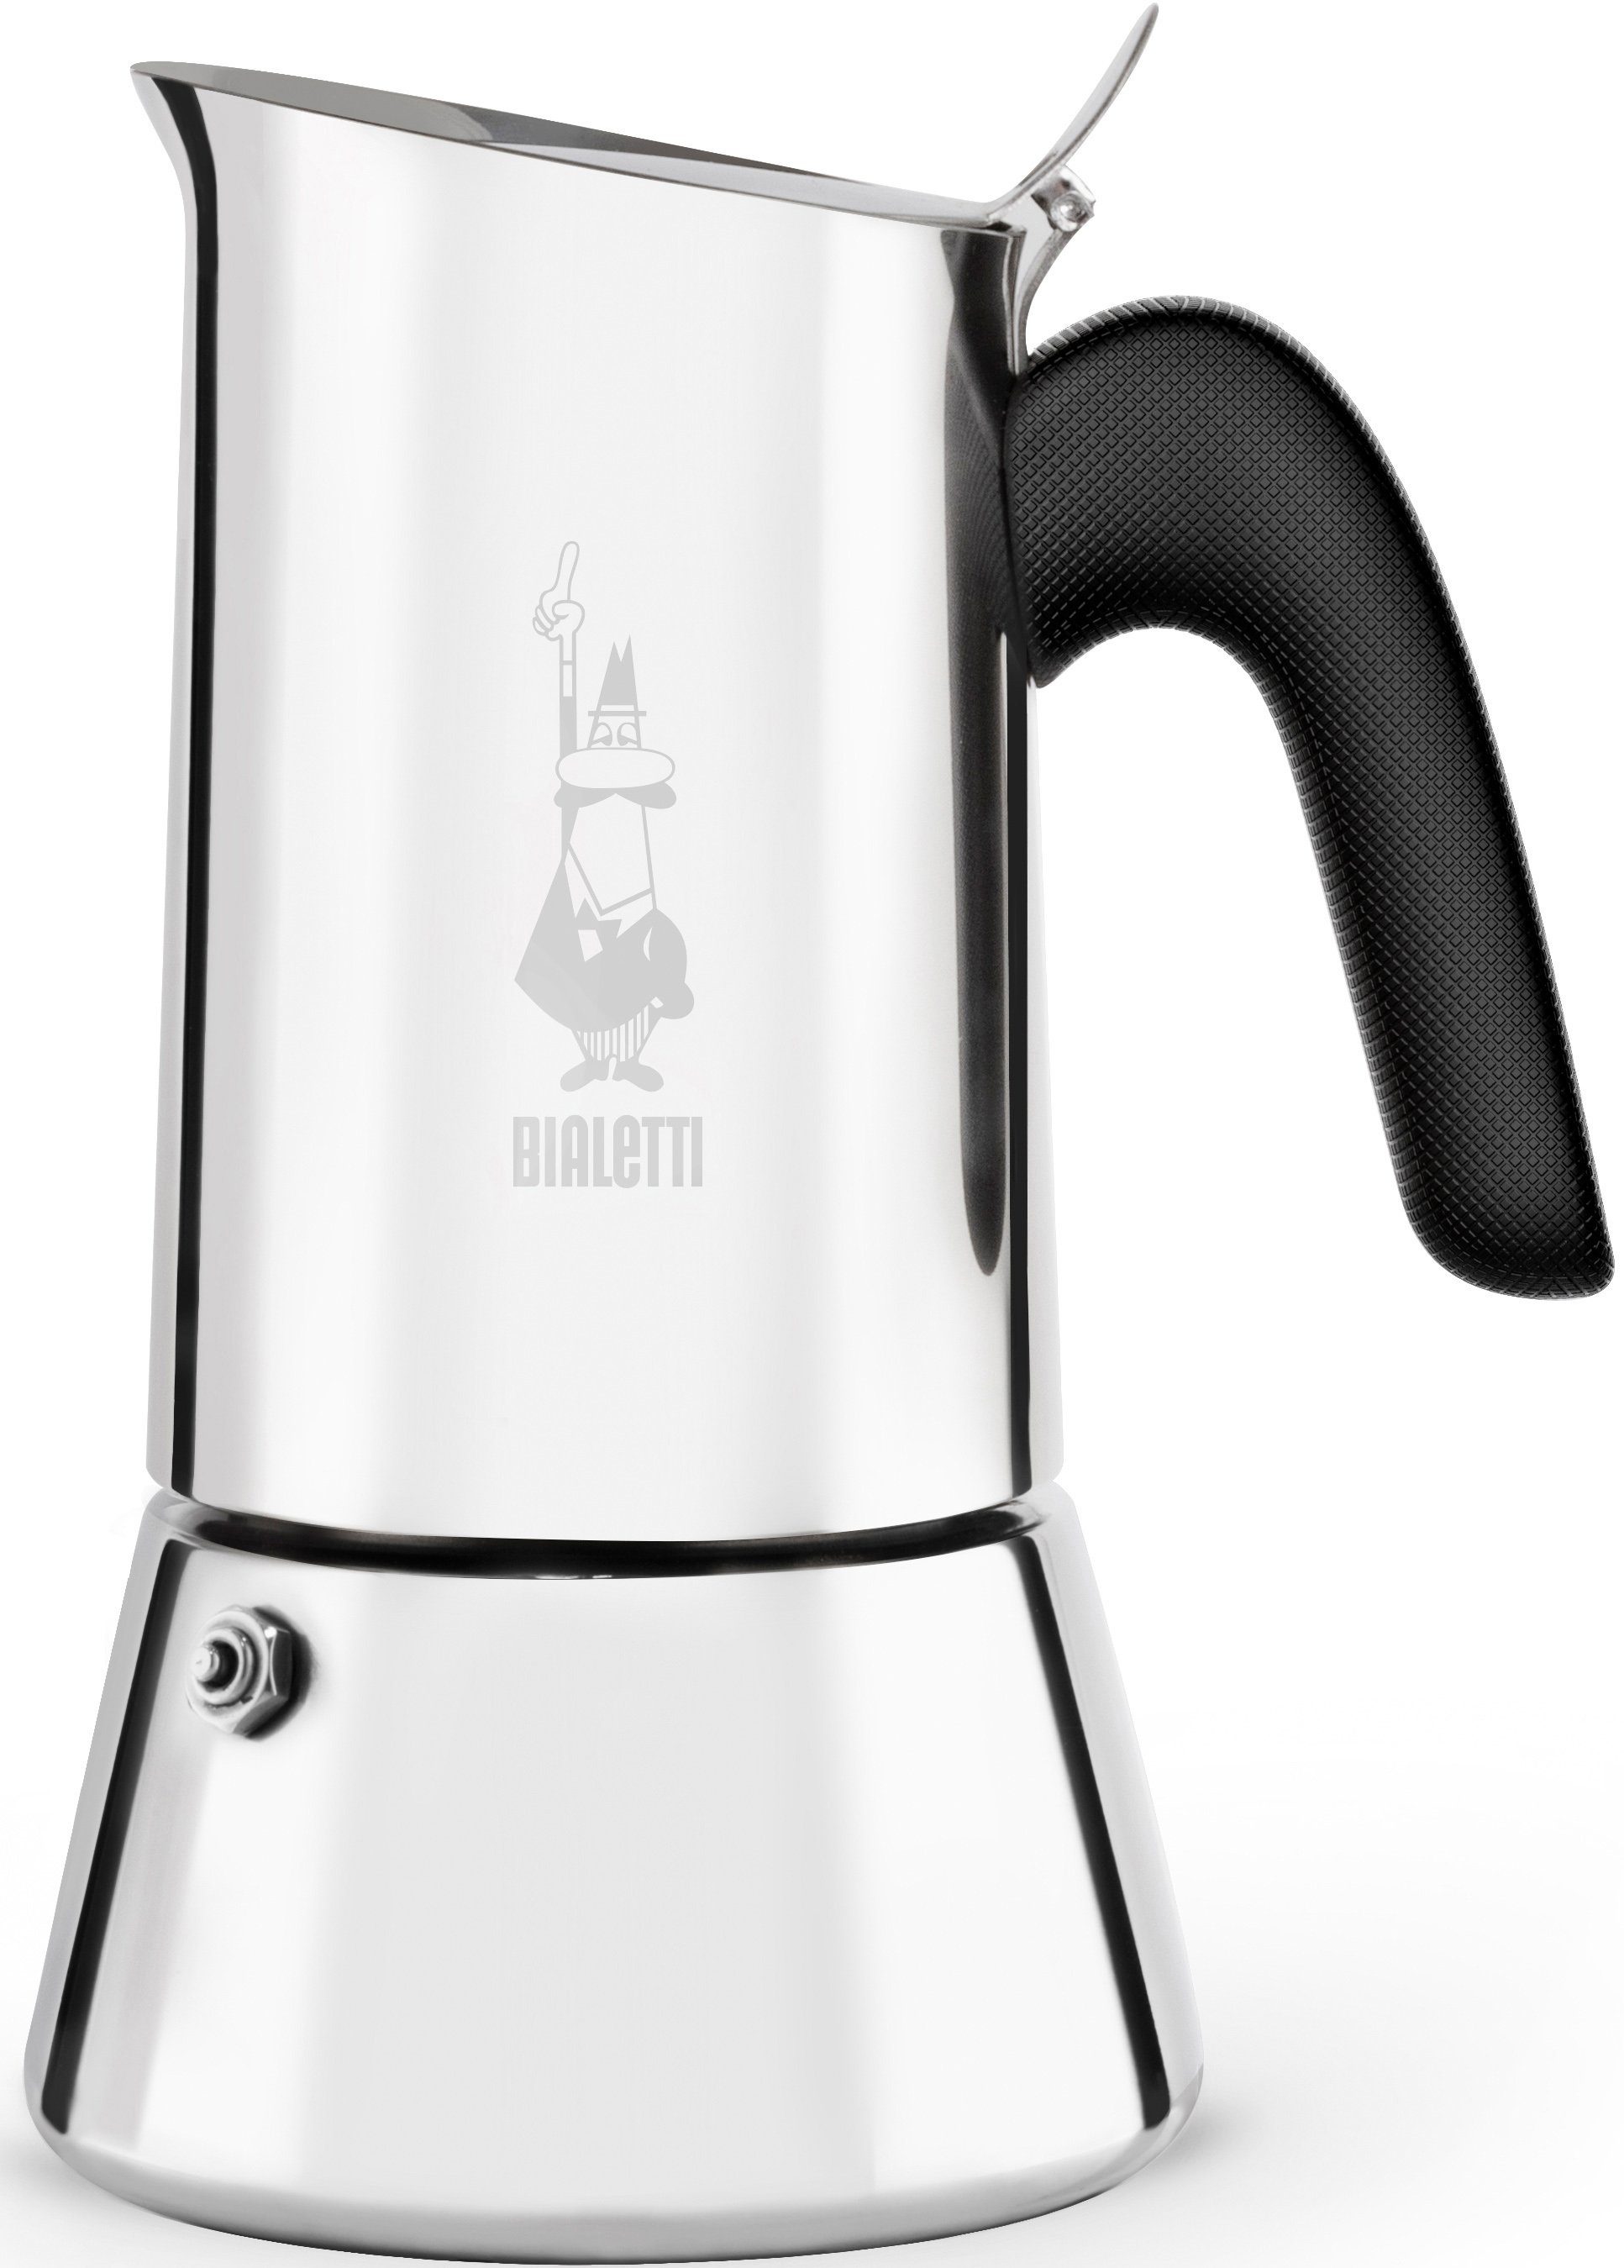 BIALETTI Espressokocher Venus, 0,23l Kaffeekanne, Edelstahl, 6 Tassen  online kaufen | OTTO